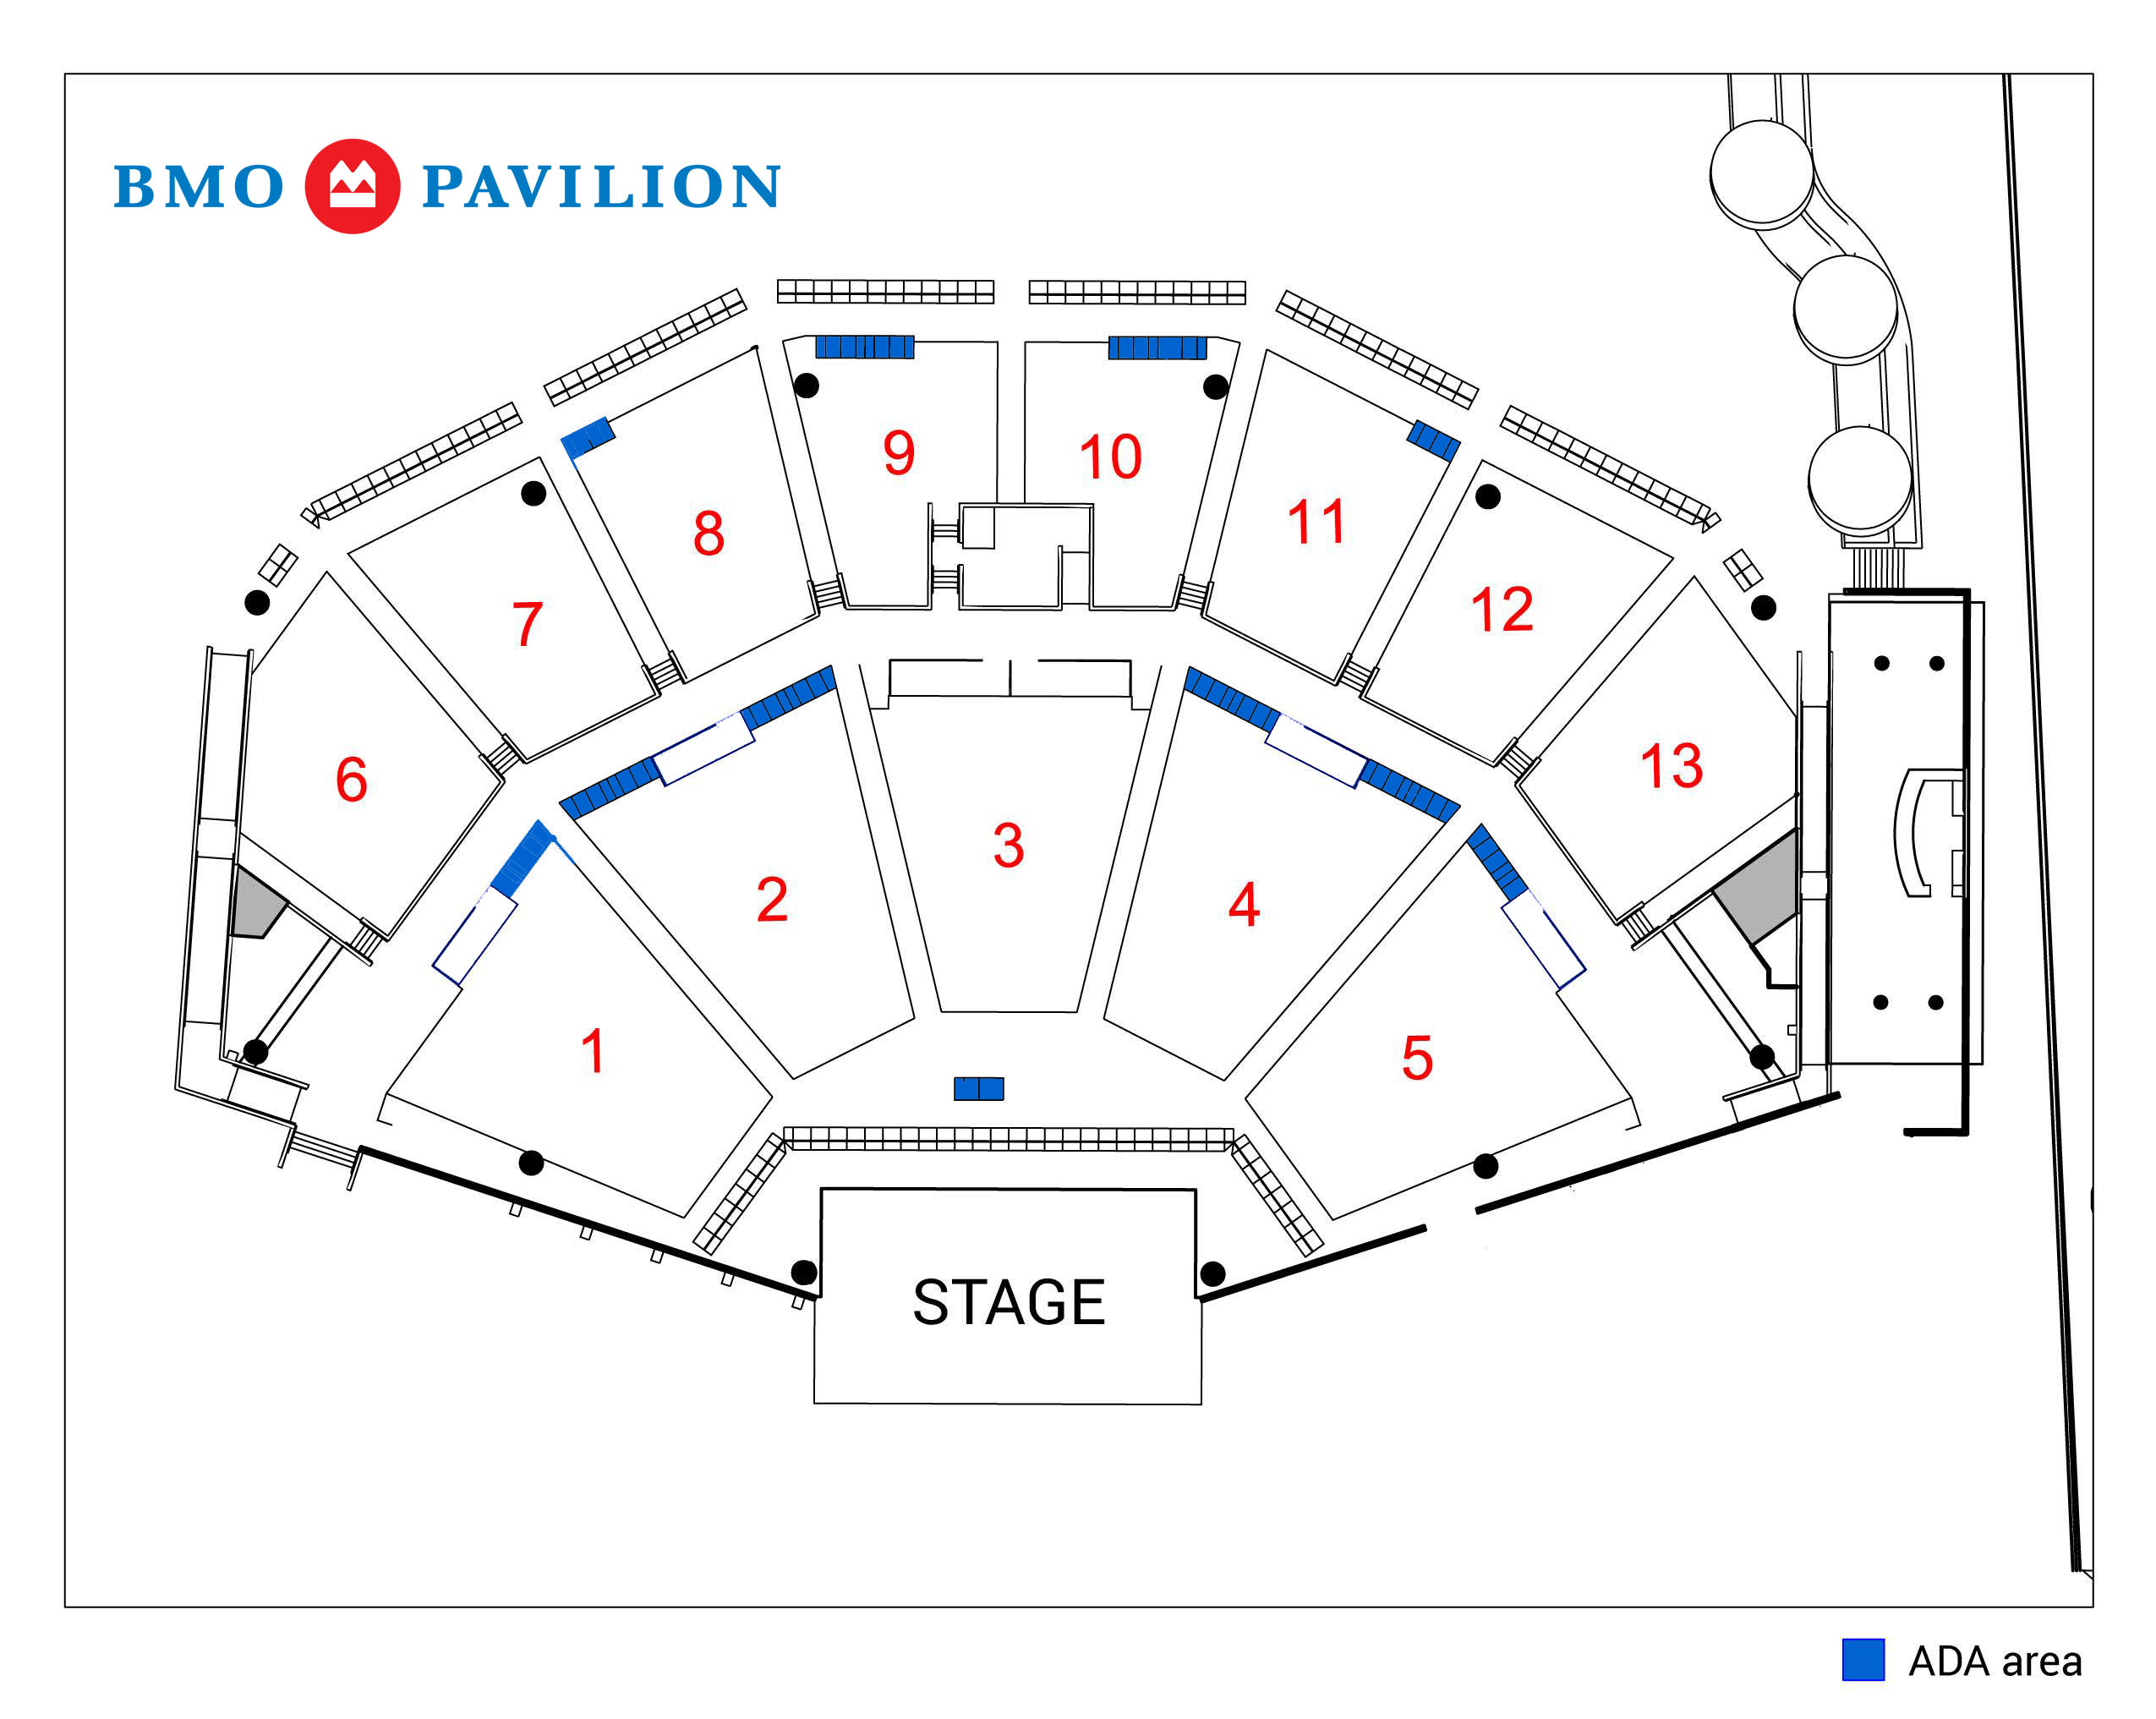 BMO Pavilion seating map